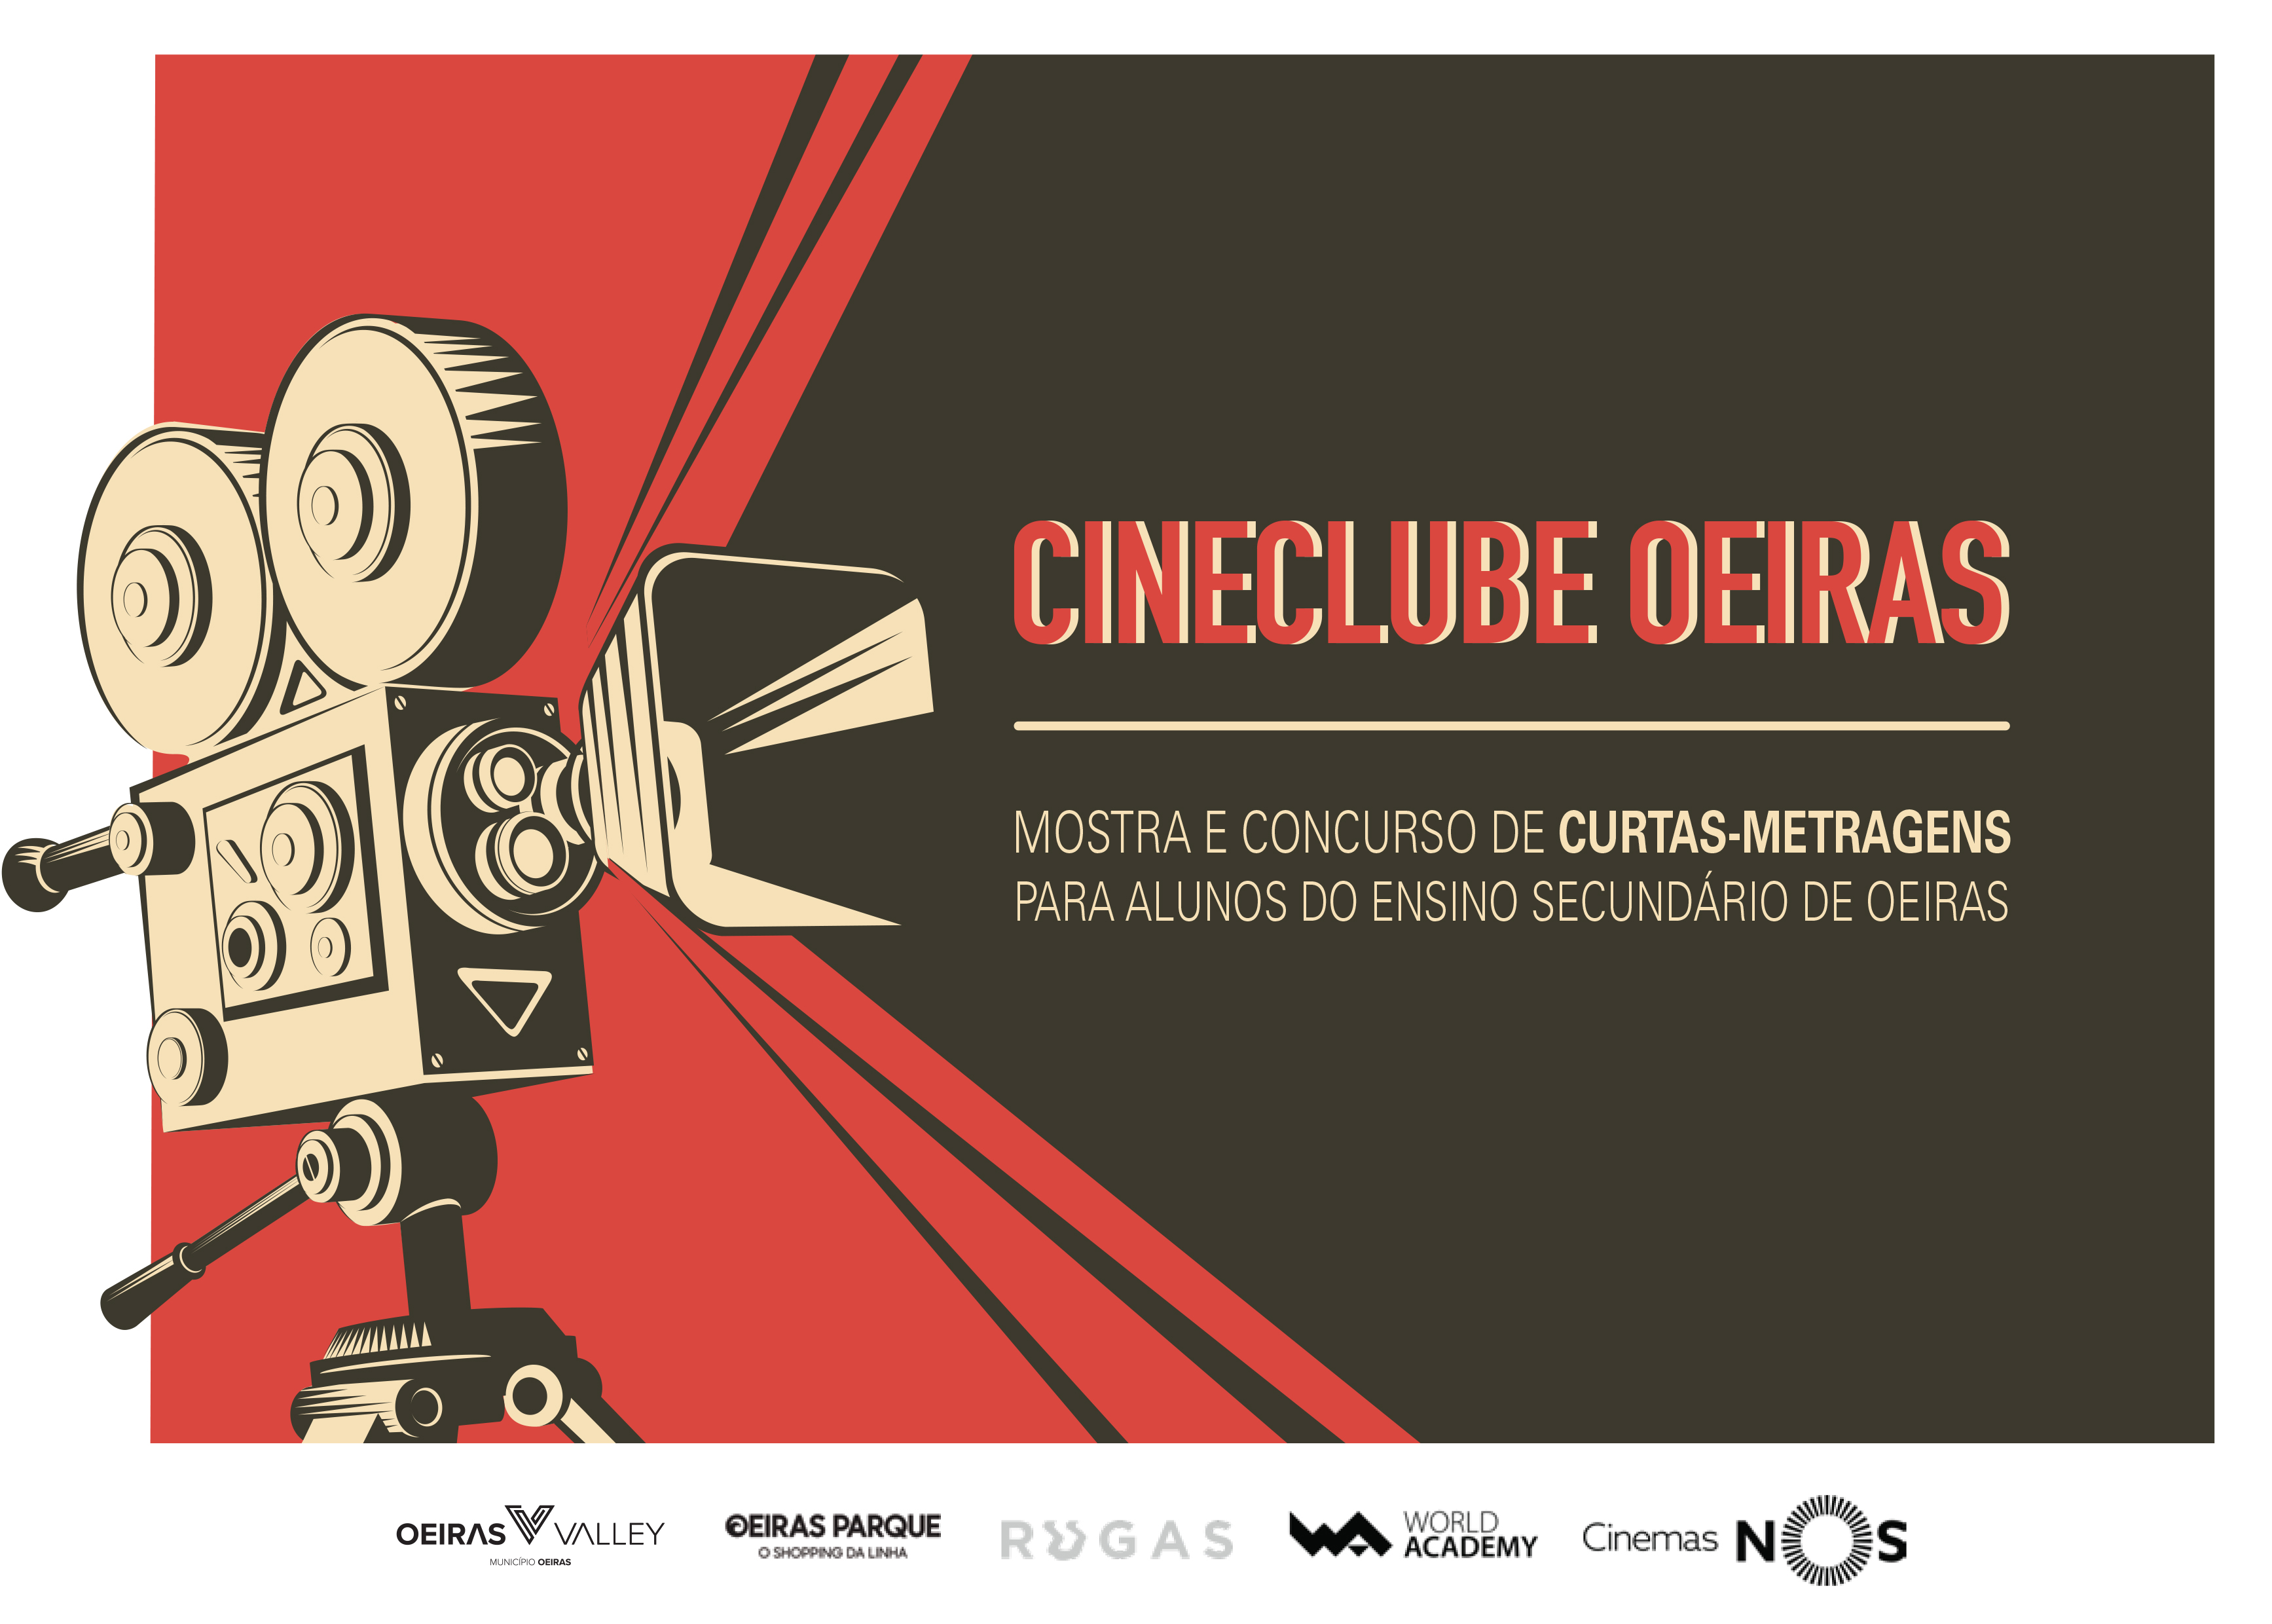 Gala de apresentação de curtas metragens da 2ª edição do Cineclube Oeiras